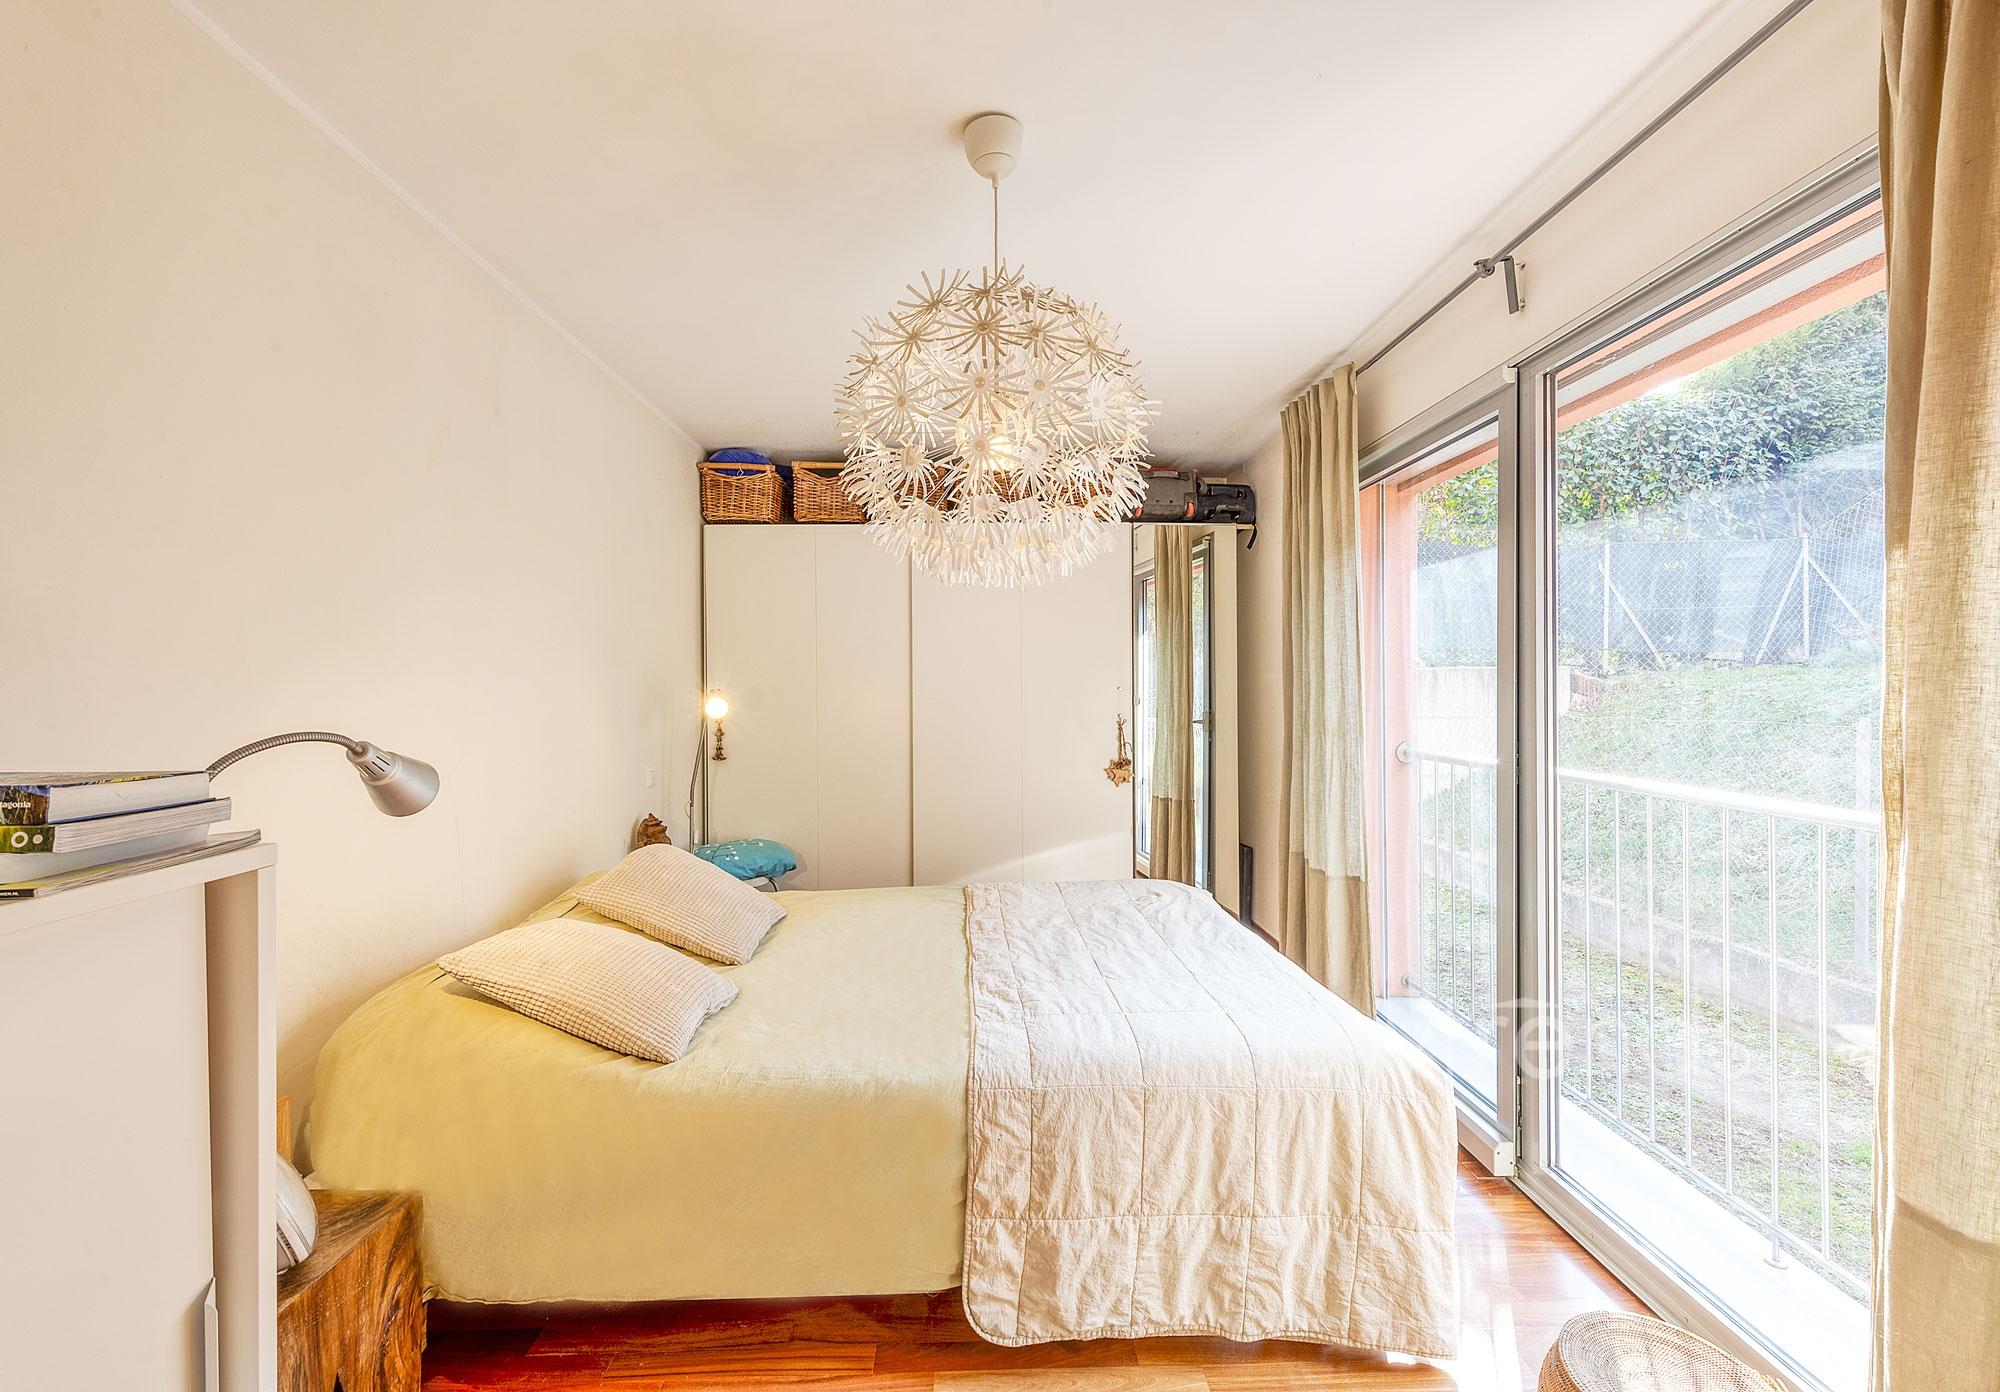 vendesi appartamento moderno con ampia terrazza coperta e giardino a gravesano: foto camera da letto